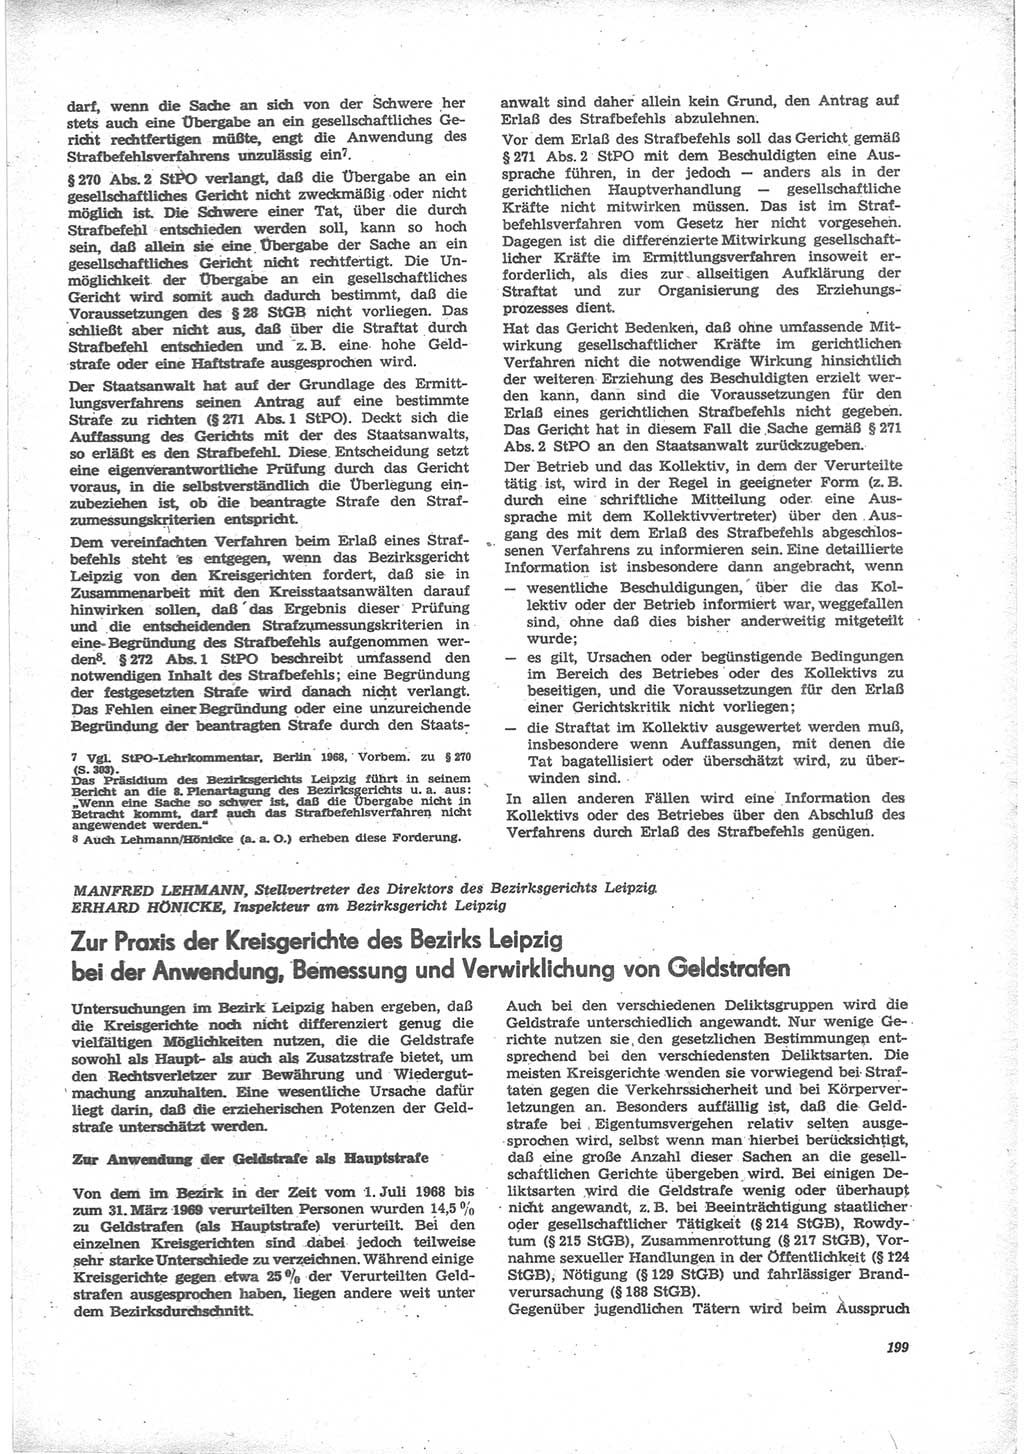 Neue Justiz (NJ), Zeitschrift für Recht und Rechtswissenschaft [Deutsche Demokratische Republik (DDR)], 24. Jahrgang 1970, Seite 199 (NJ DDR 1970, S. 199)